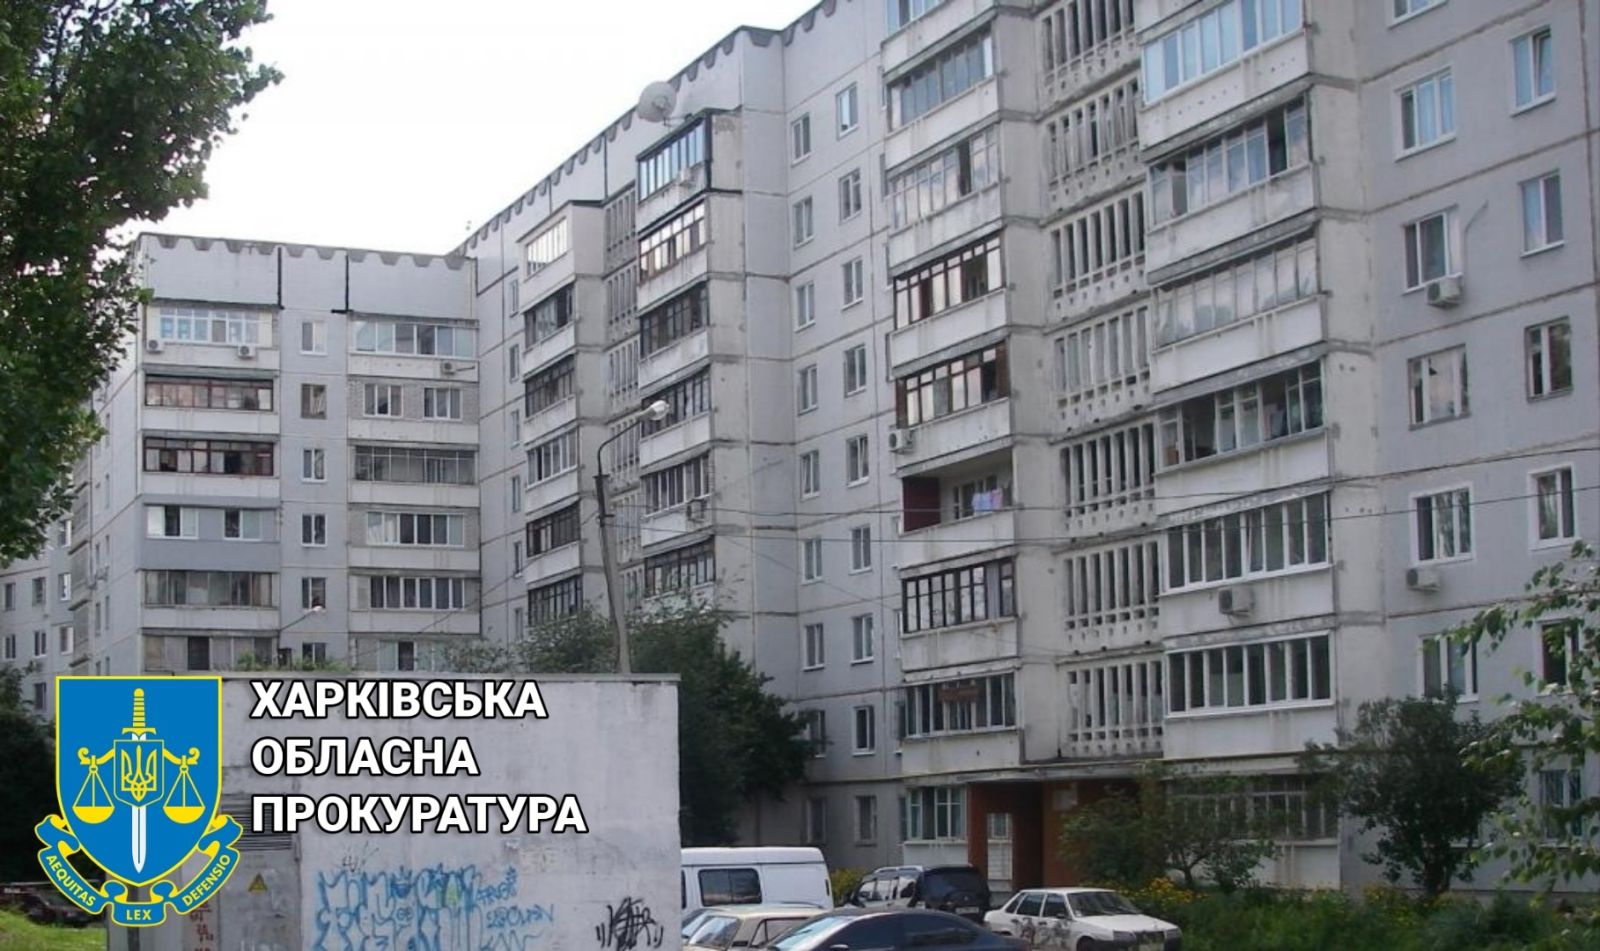 у власність громади Харкова буде передано квартиру вартістю 2,4 млн гривень, якою заволоділи шахраї